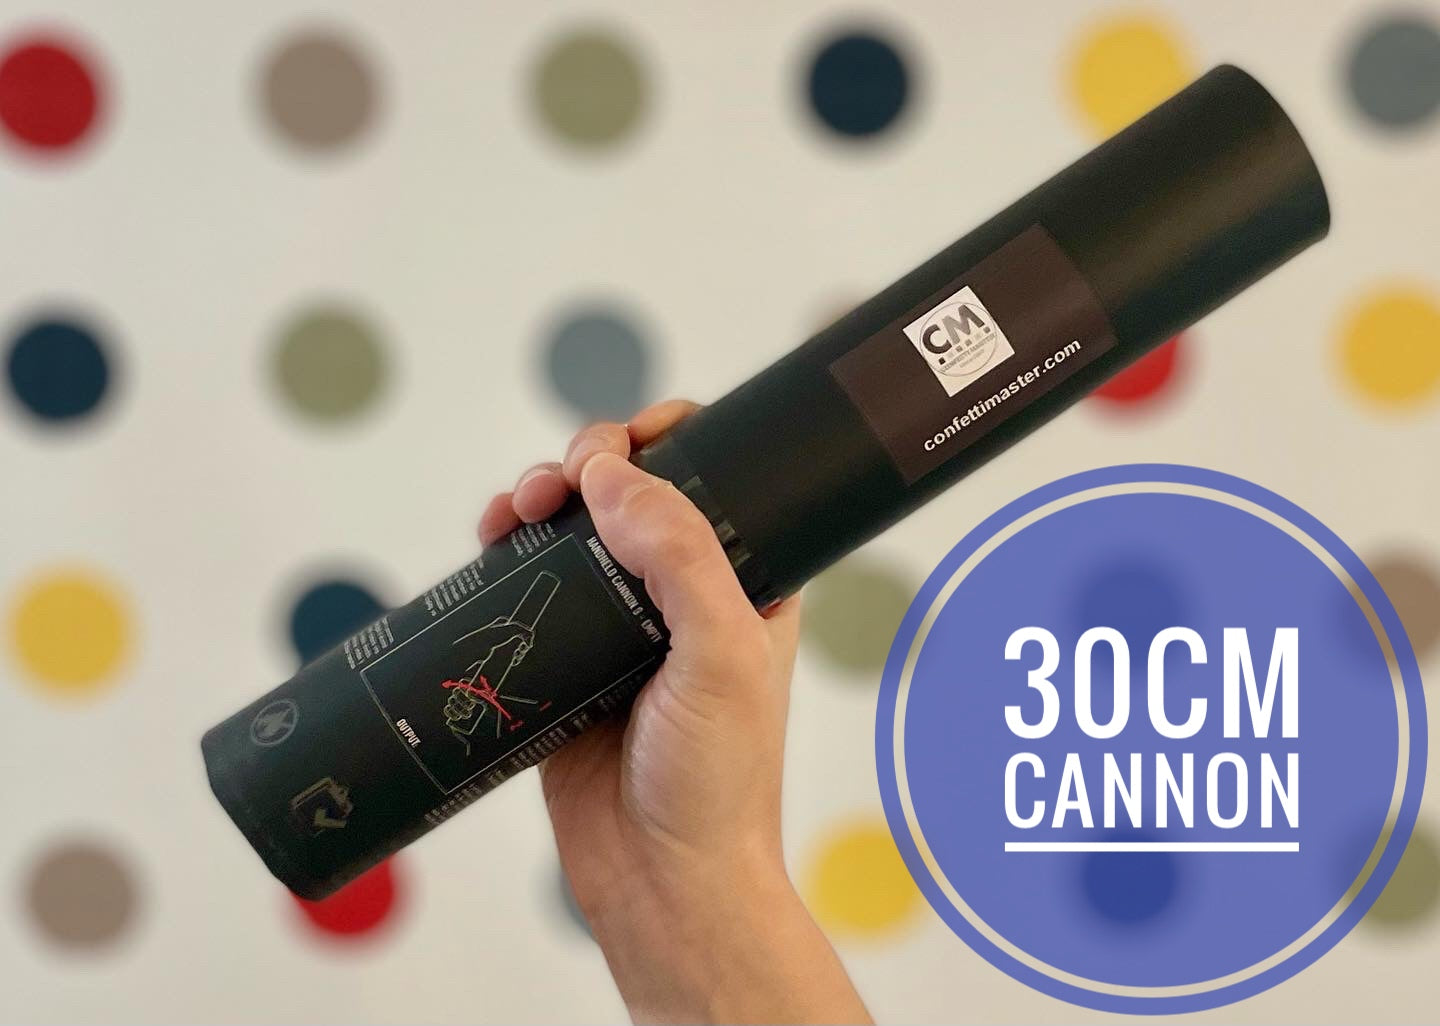 30cm gender reveal blue confetti cannon